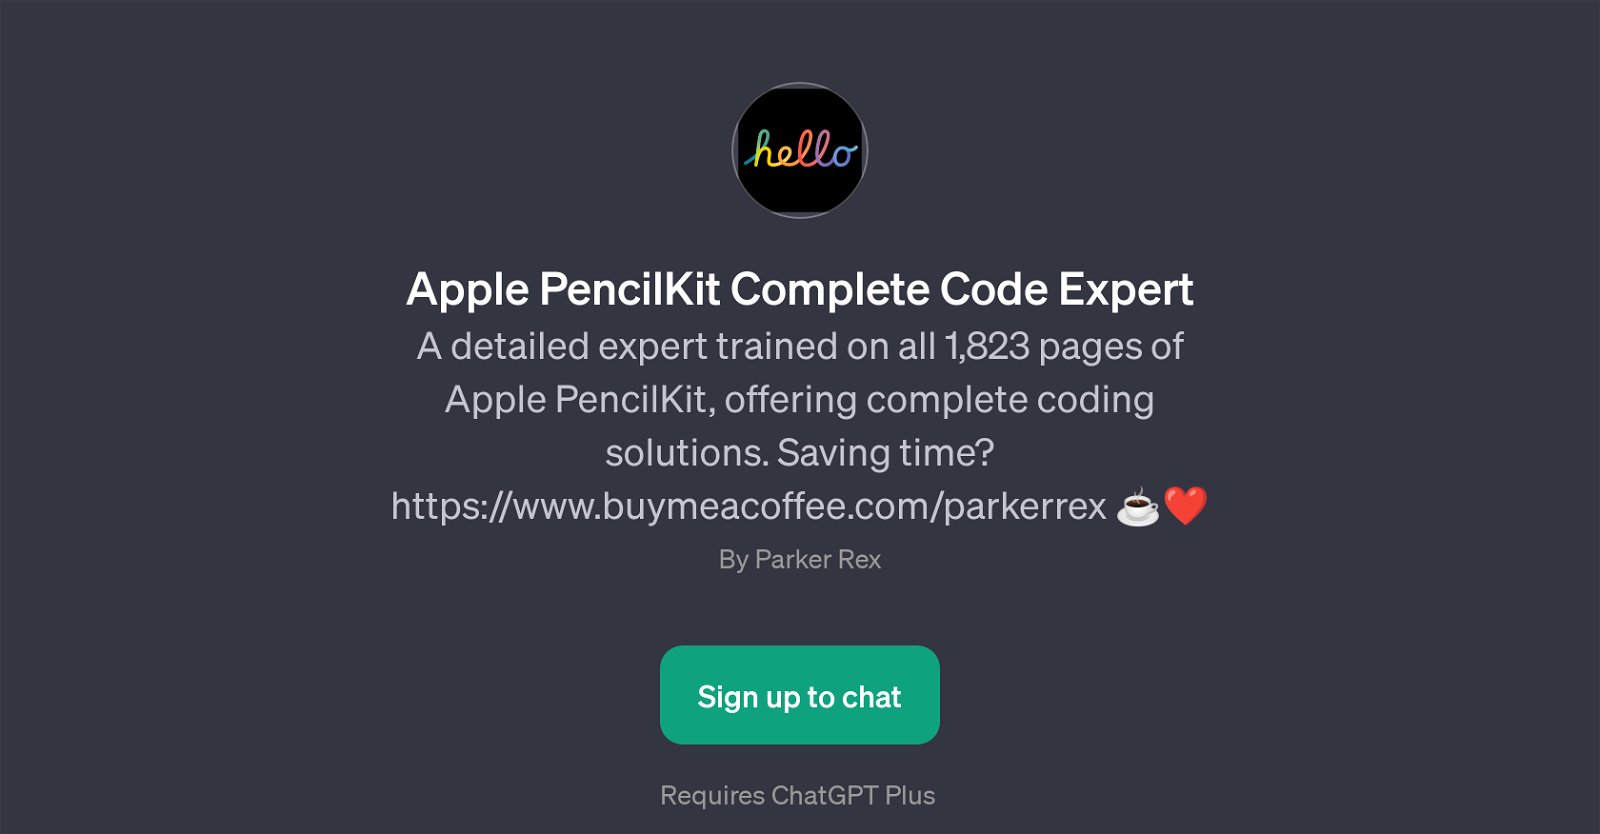 Apple PencilKit Complete Code Expert website